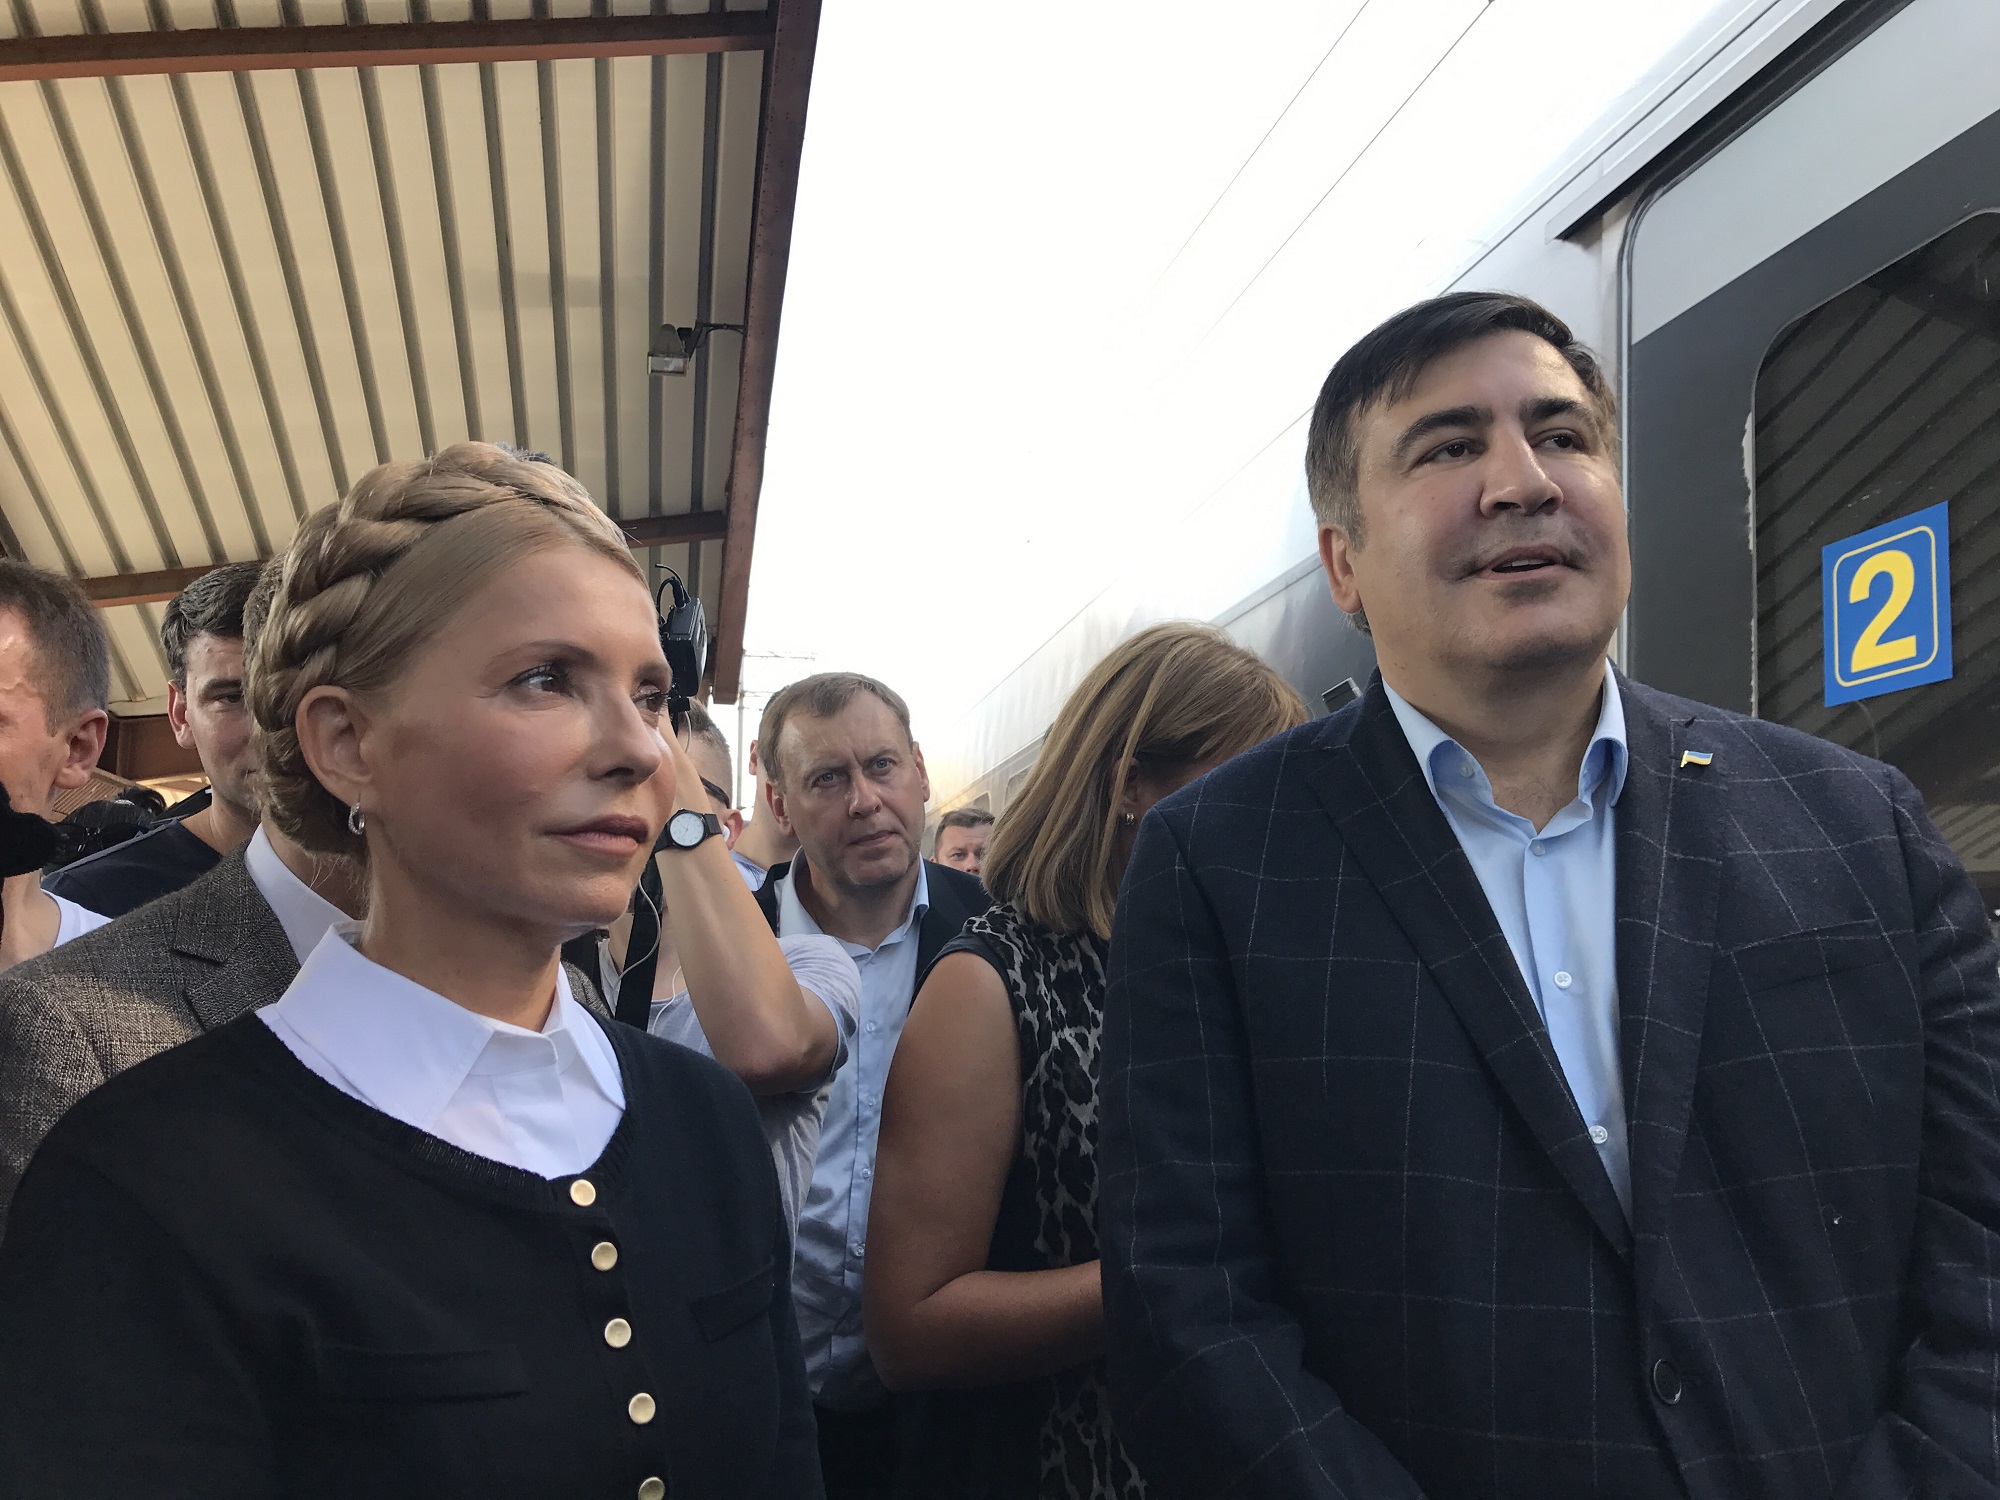 Saakashvili for web